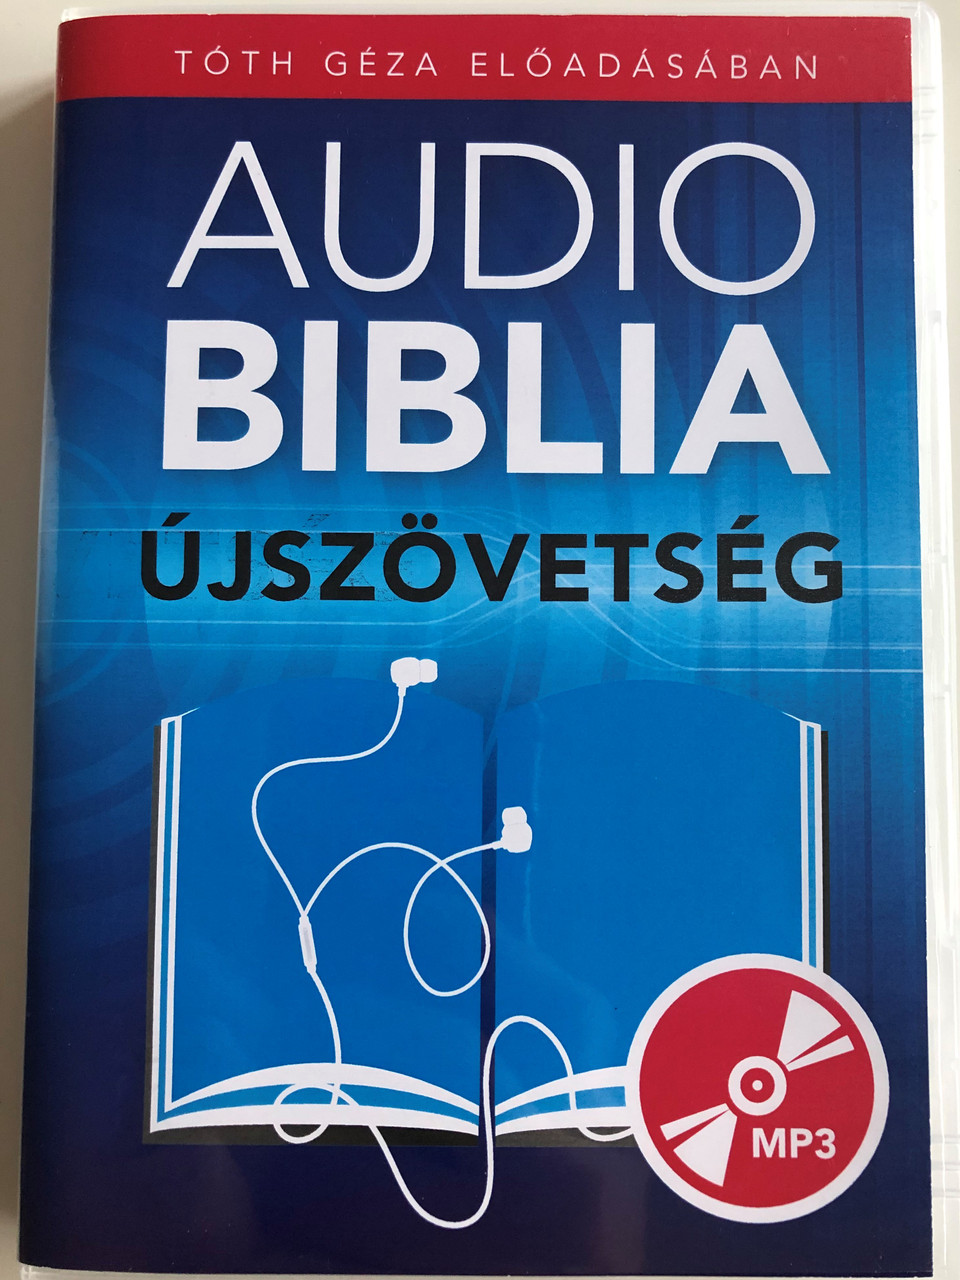 Audio Biblia MP3 CD 2011 Újszövetség / Hungarian language Audio Bible - New  Testament / Tóth Géza Előadásában / Read by Géza Tóth - bibleinmylanguage